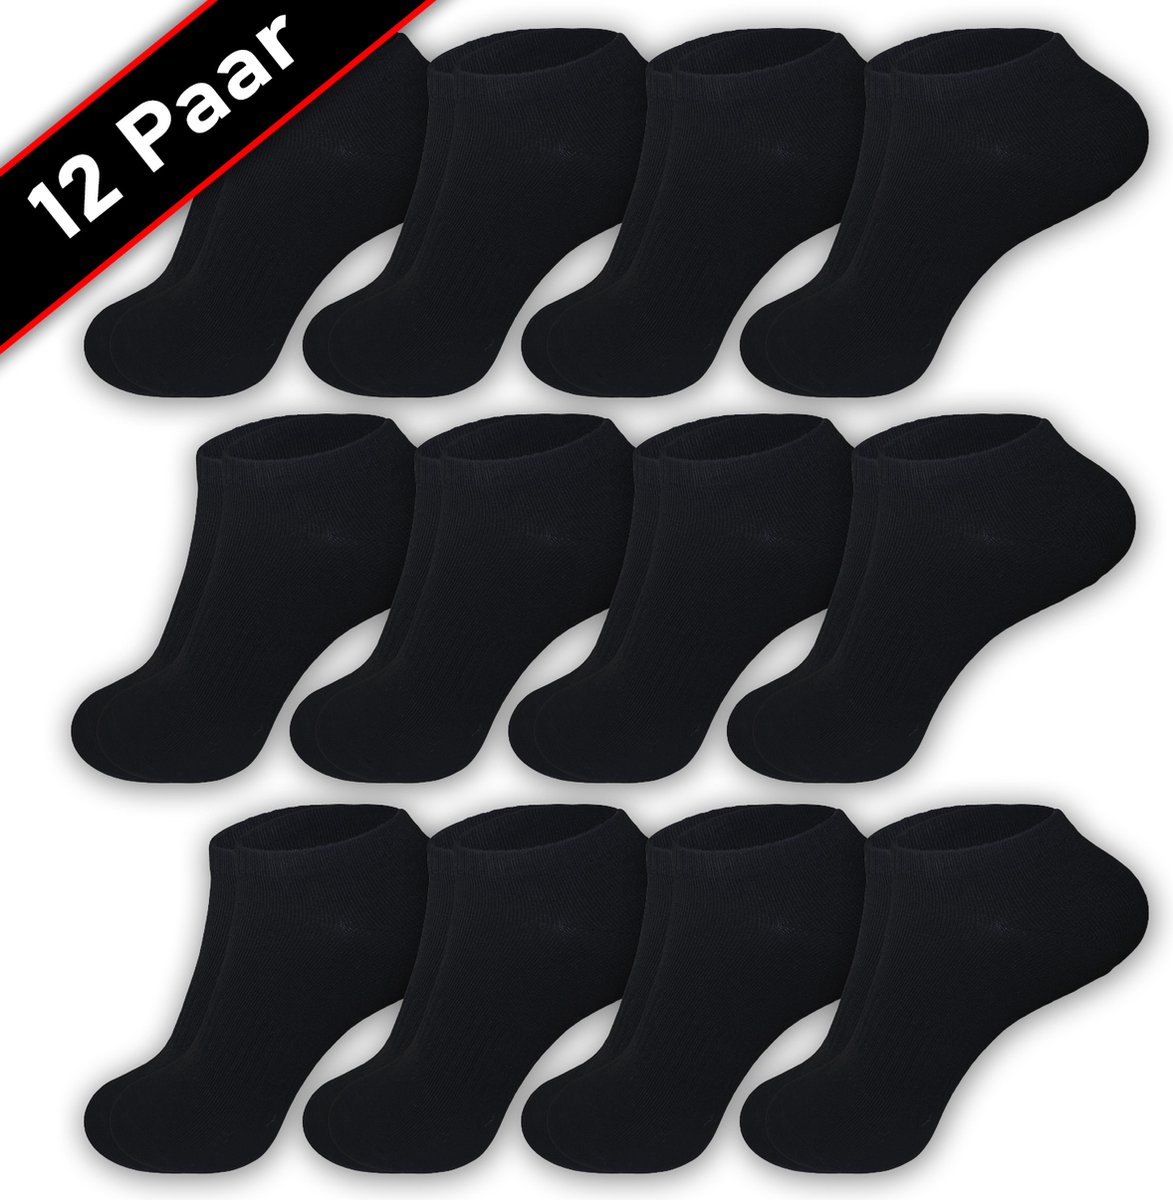 Blacktag - Enkelsokken - Sokken - Sneakersokken - Maat 41/45 - 12 Paar - Zwart – Katoen